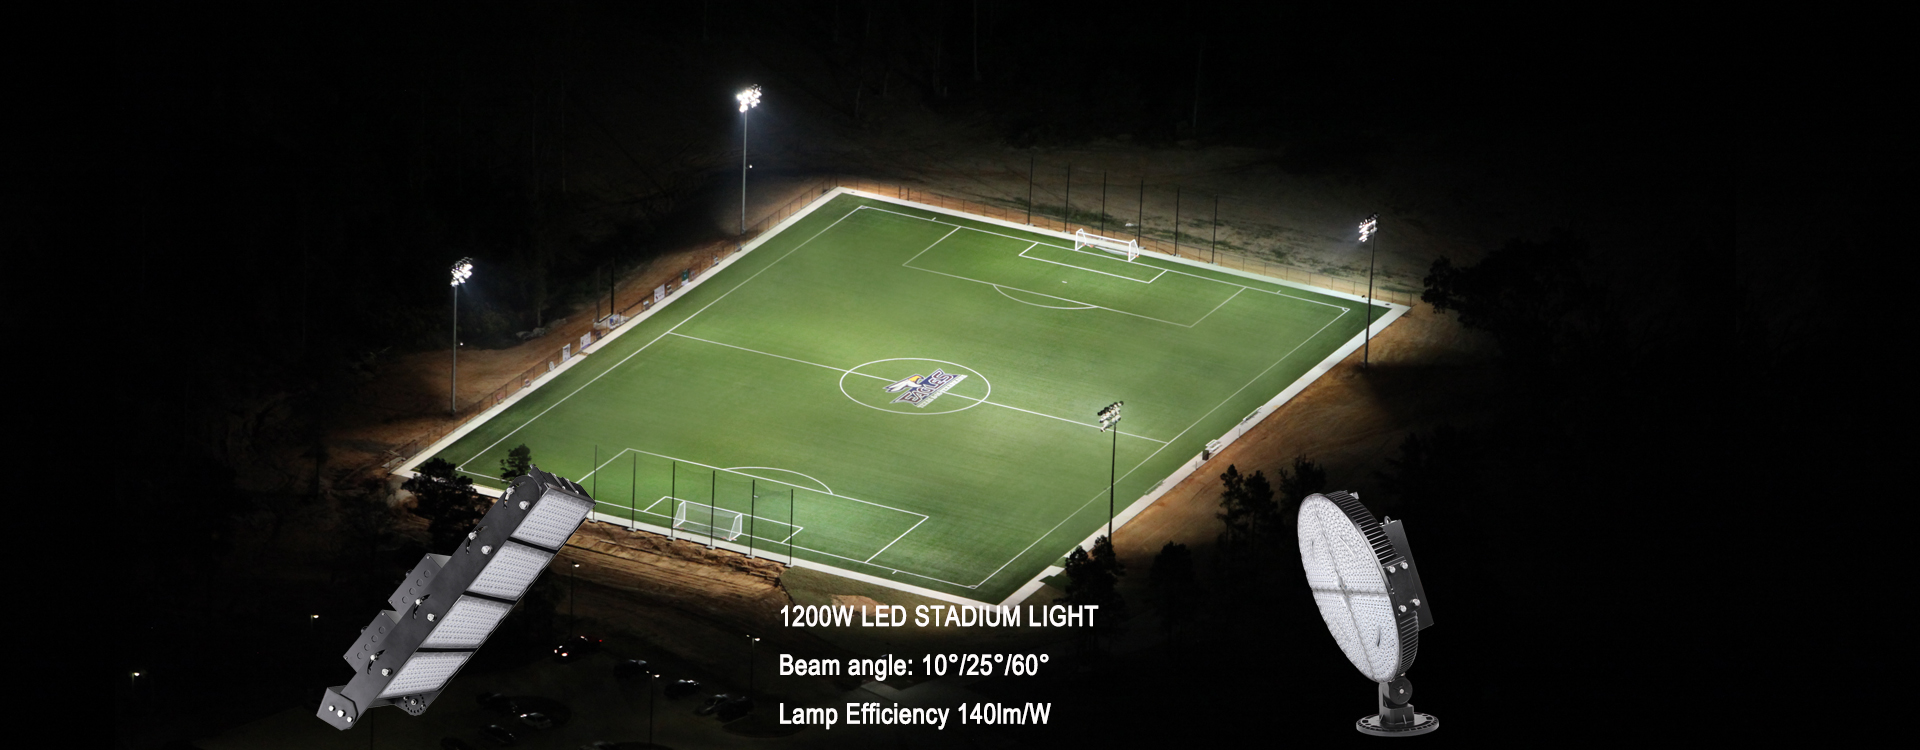 led stadium light, led flood light